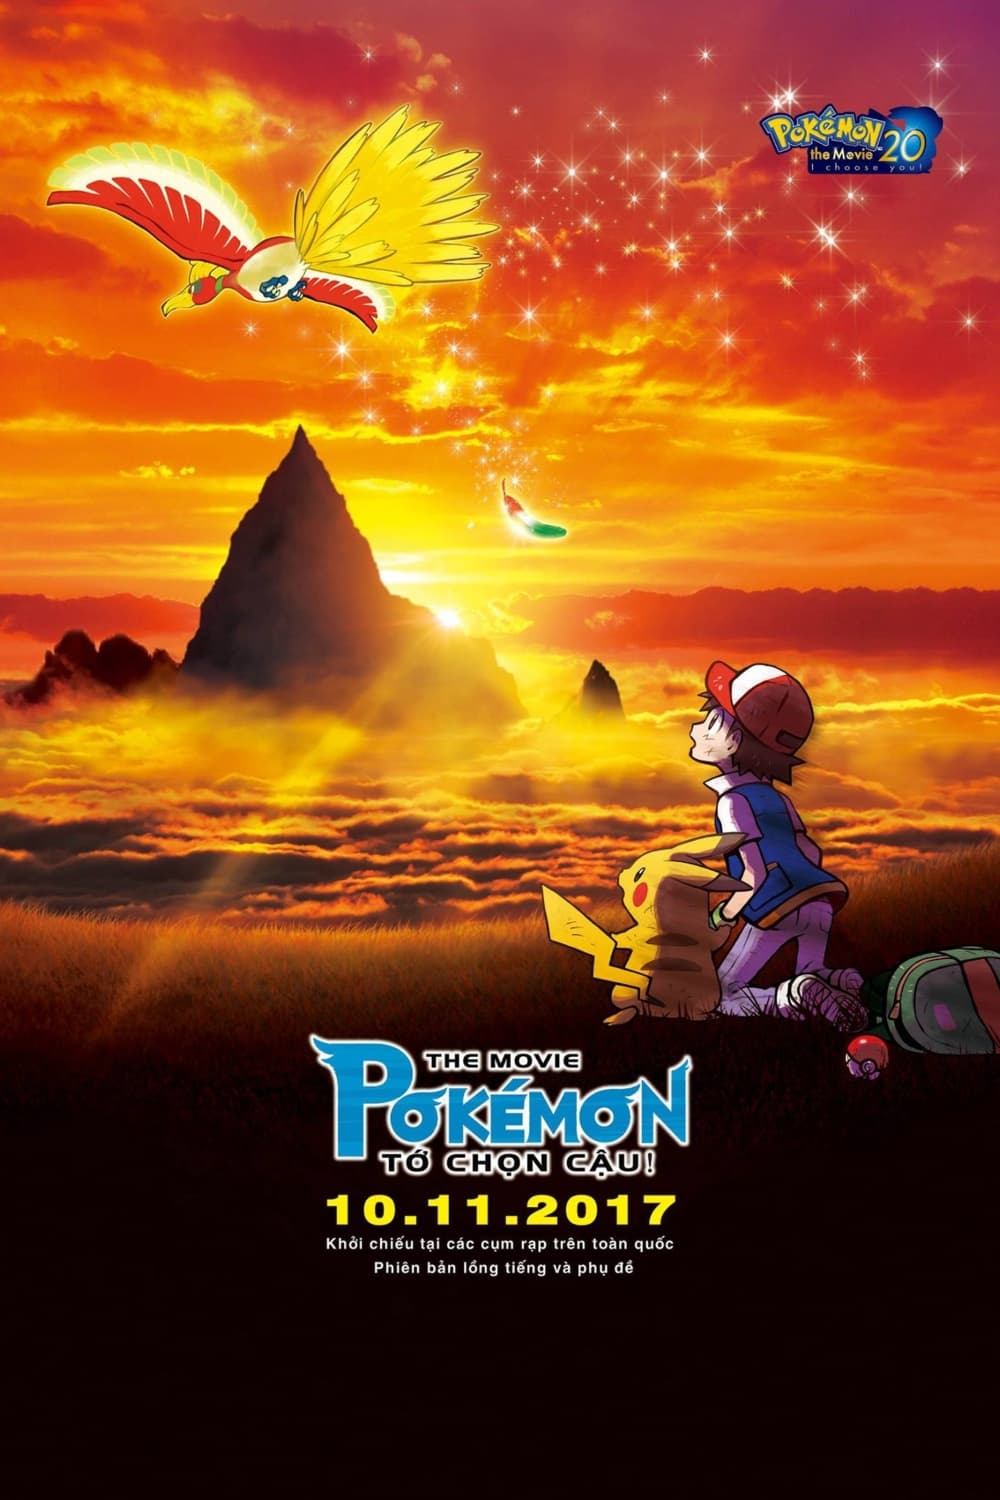 Pokémon the Movie: Tớ Chọn Cậu! (Pokémon the Movie: I Choose You!) [2017]